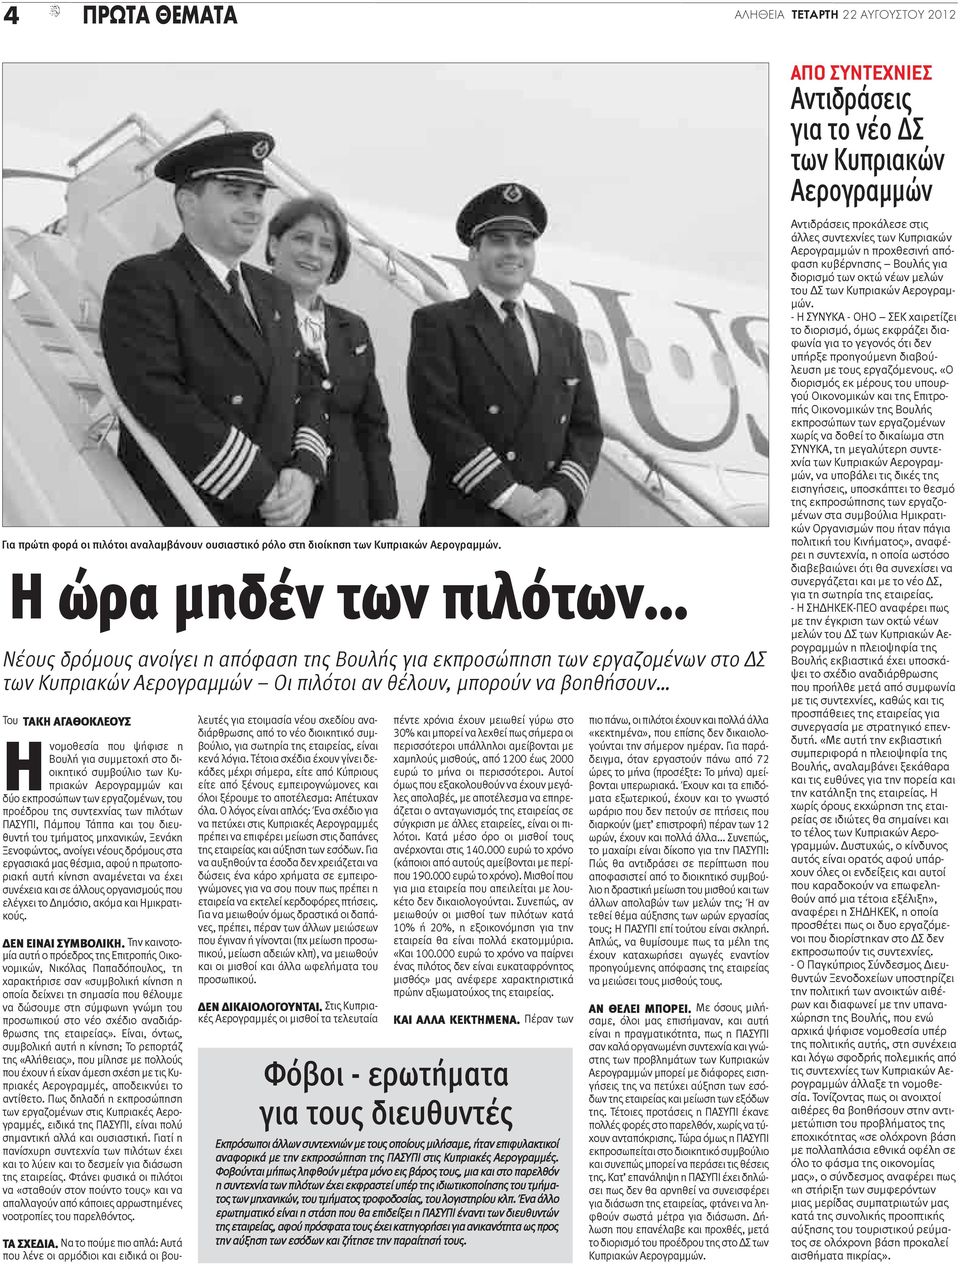 Ηνομοθεσία που ψήφισε η Βουλή για συμμετοχή στο διοικητικό συμβούλιο των Κυπριακών Αερογραμμών και δύο εκπροσώπων των εργαζομένων, του προέδρου της συντεχνίας των πιλότων ΠΑΣΥΠΙ, Πάμπου Τάππα και του